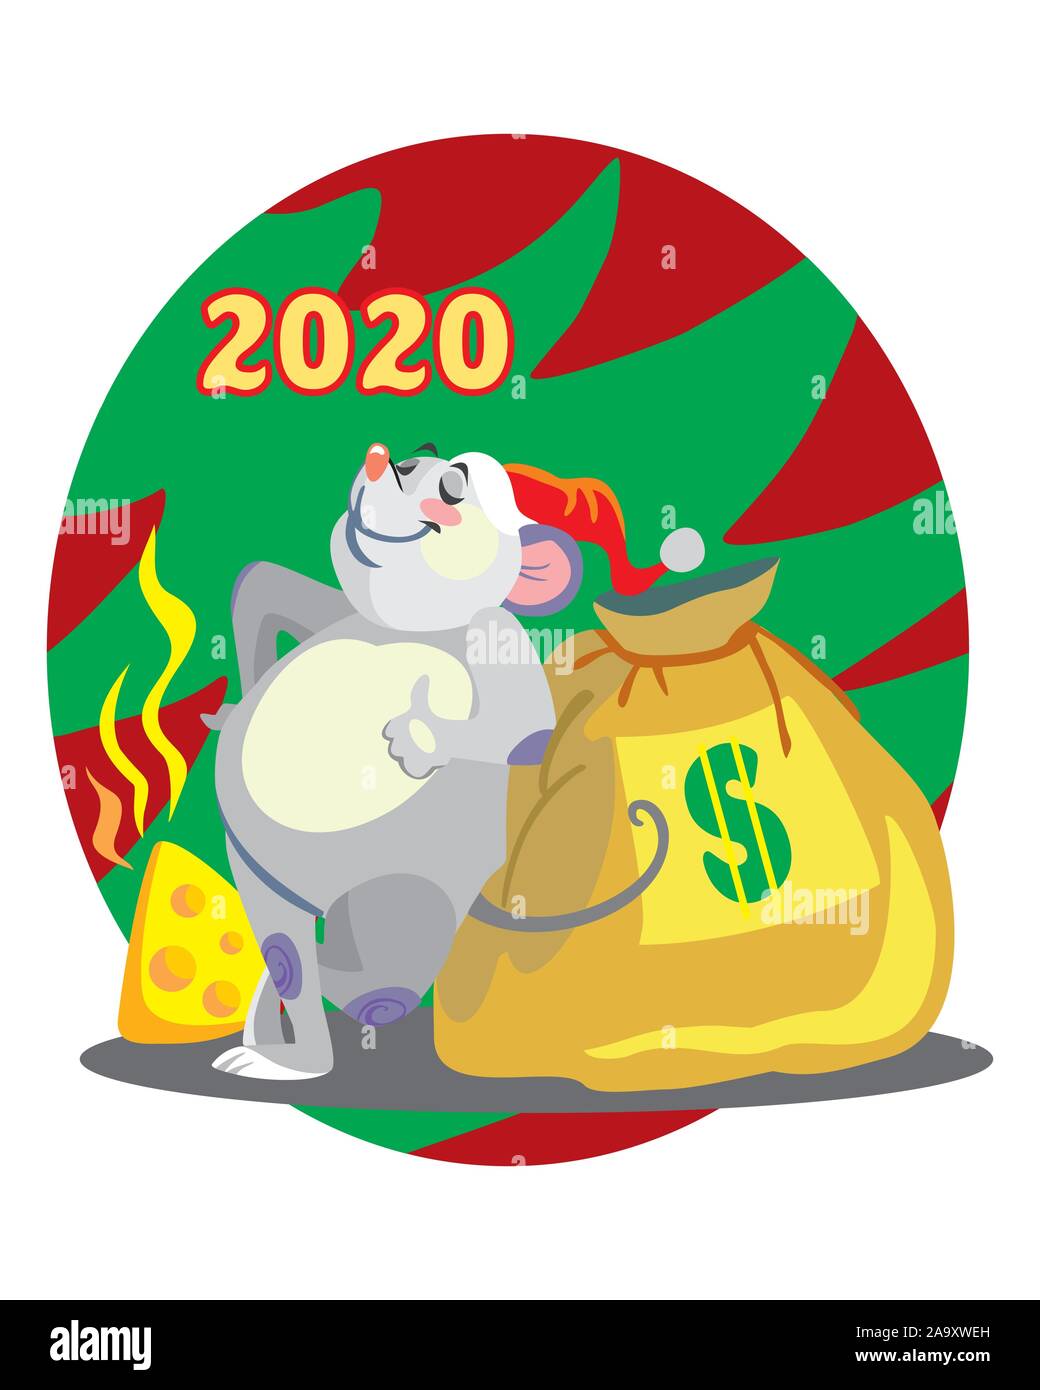 Vector illustration de souris mignon personnage avec sac d'argent sur l'arrière-plan avec arbre de Noël. Cartoon Vector illustration stock.vacances d'hiver, Chr Illustration de Vecteur